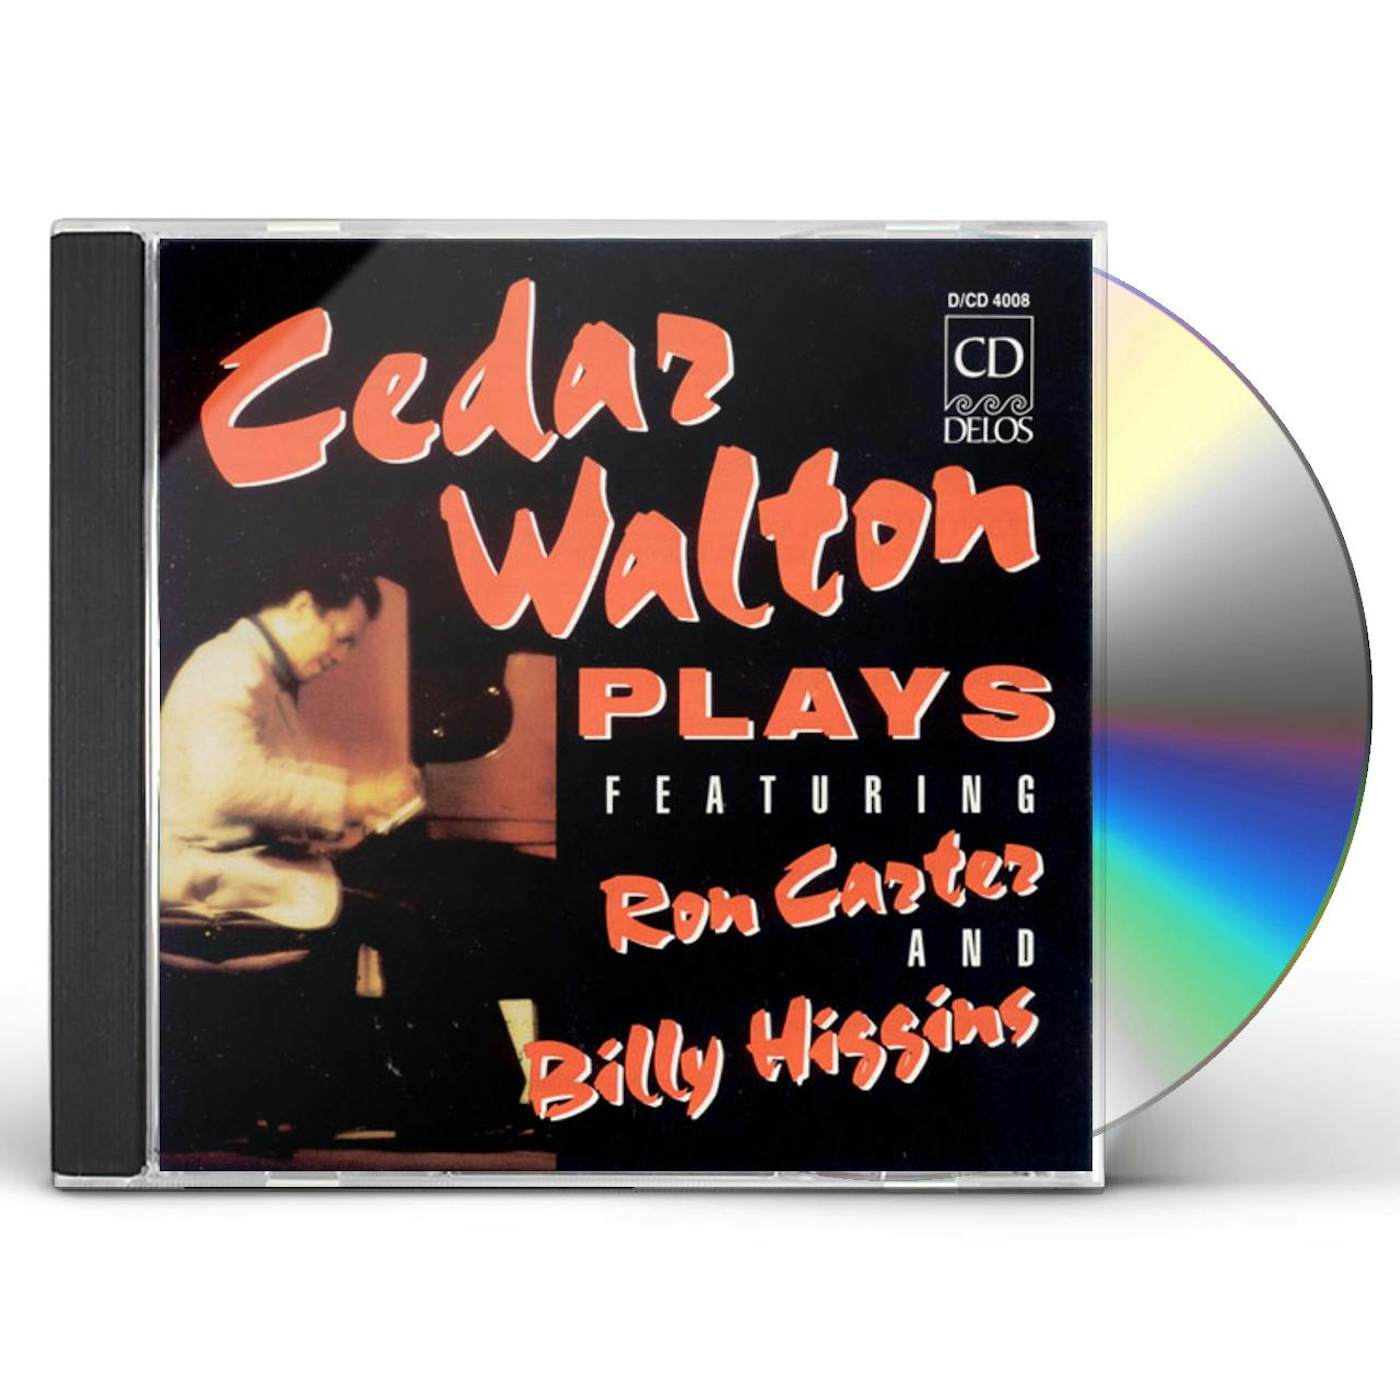 CEDAR WALTON PLAYS CD